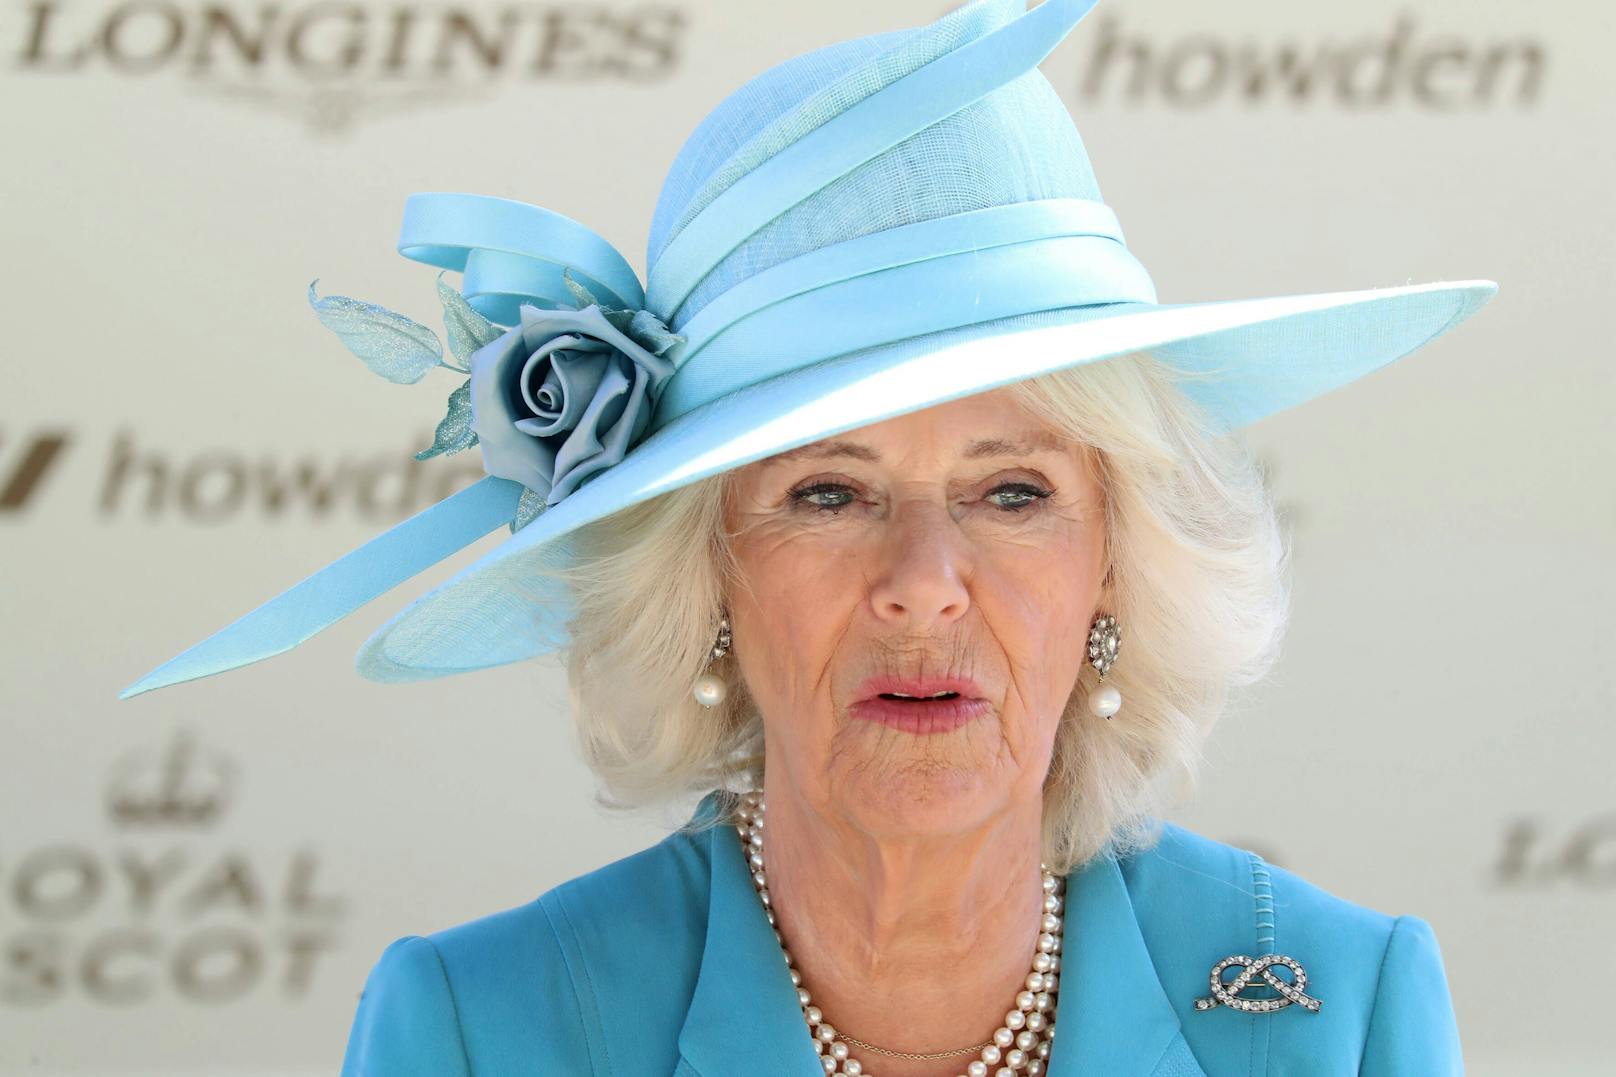 Die neue "Queen Consort" Camilla. Sie hat mit diesem Status allerdings keine Machtbefugnisse.